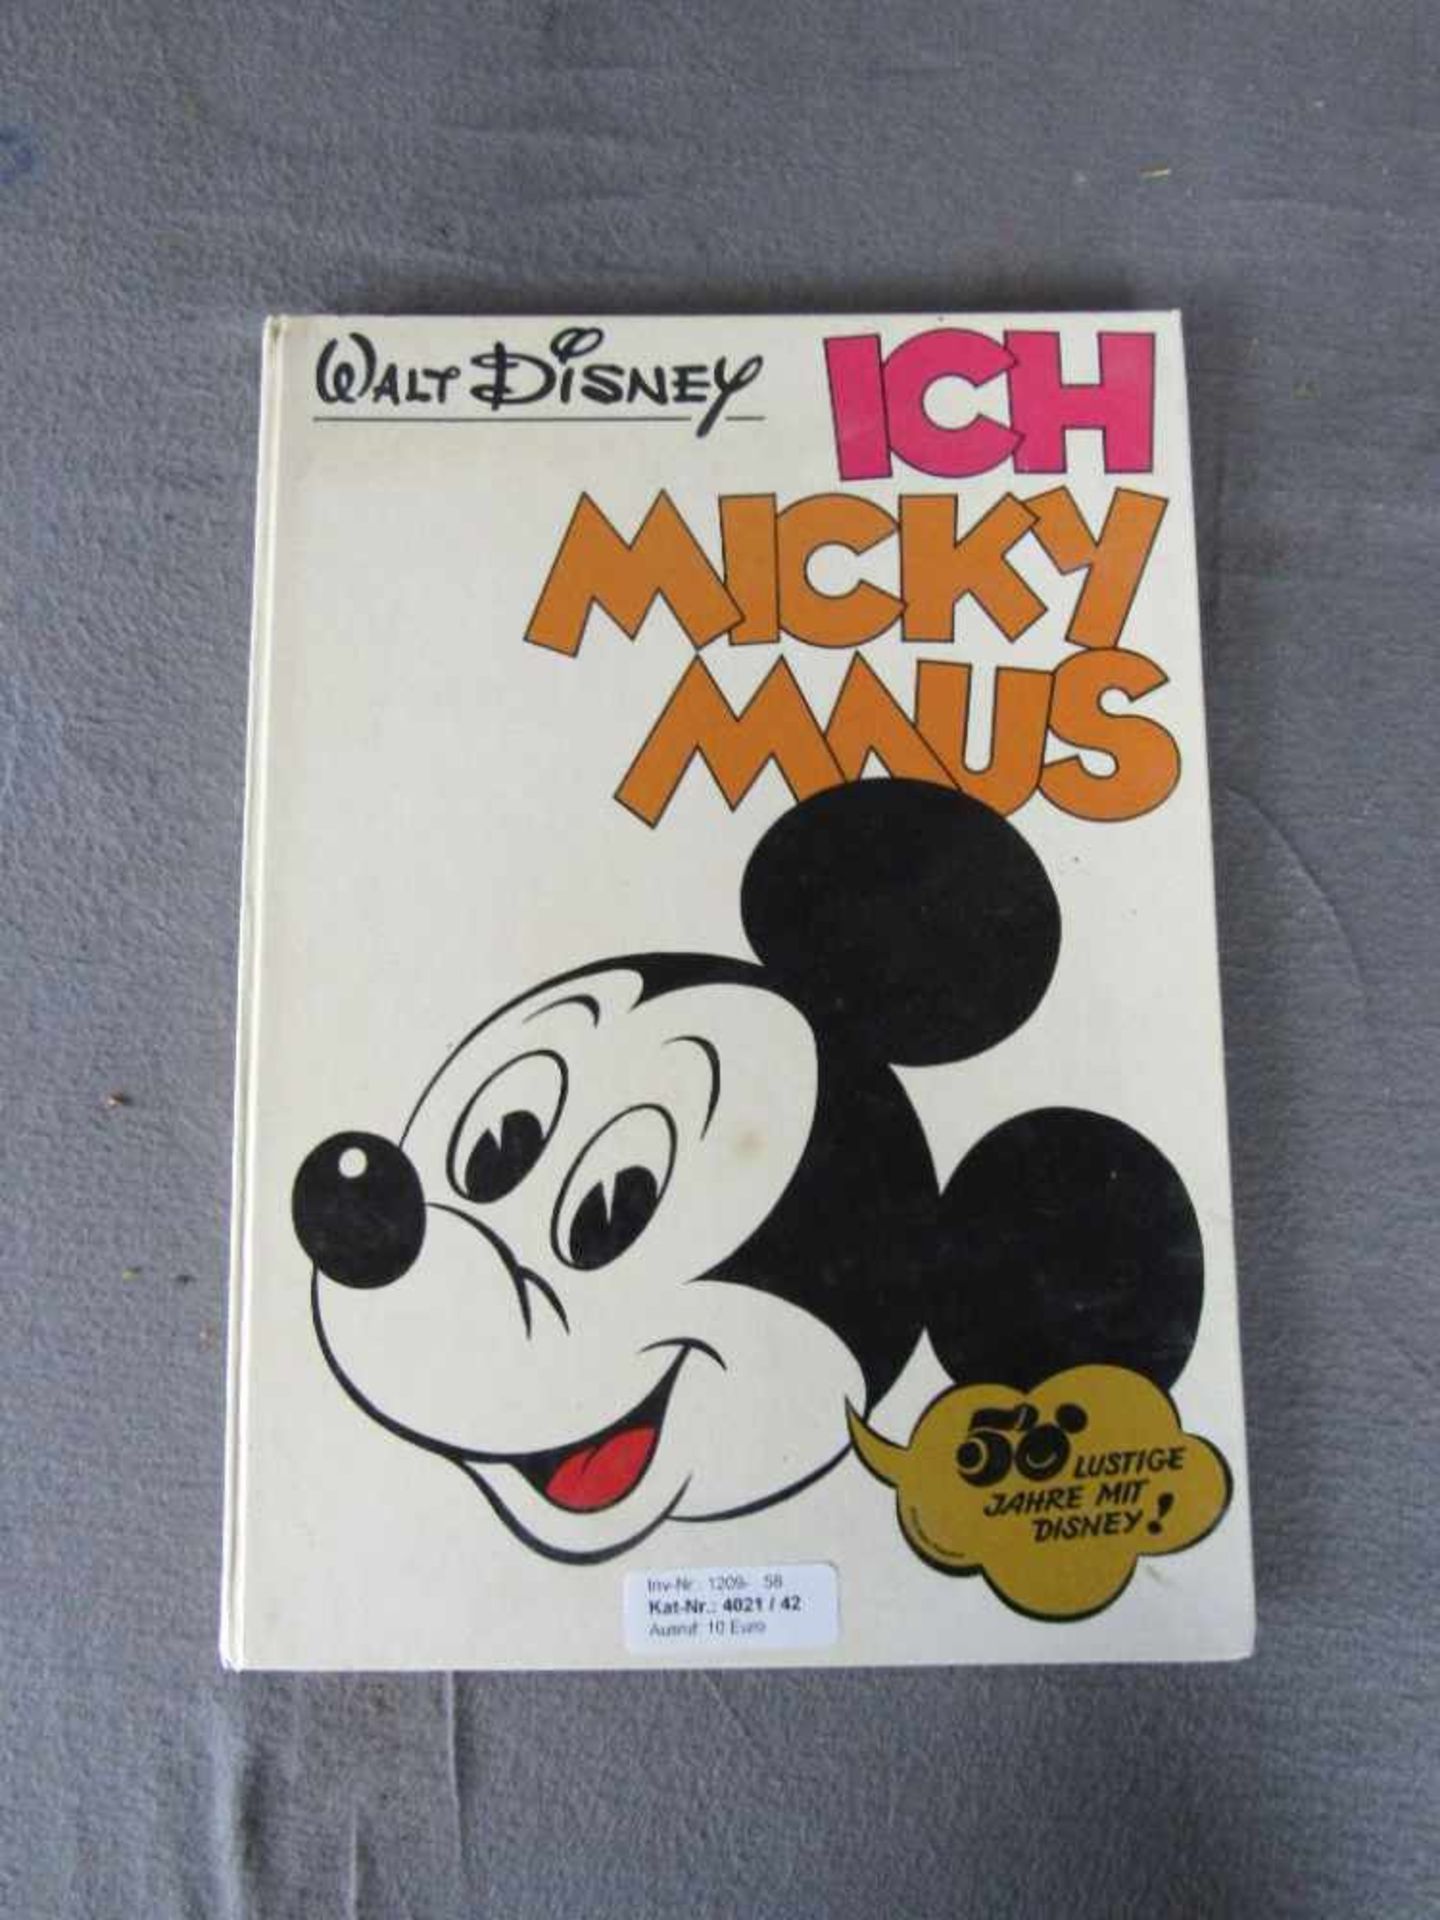 Micky Maus Buch von 1970 guter Zustand- - -20.00 % buyer's premium on the hammer price19.00 % VAT on